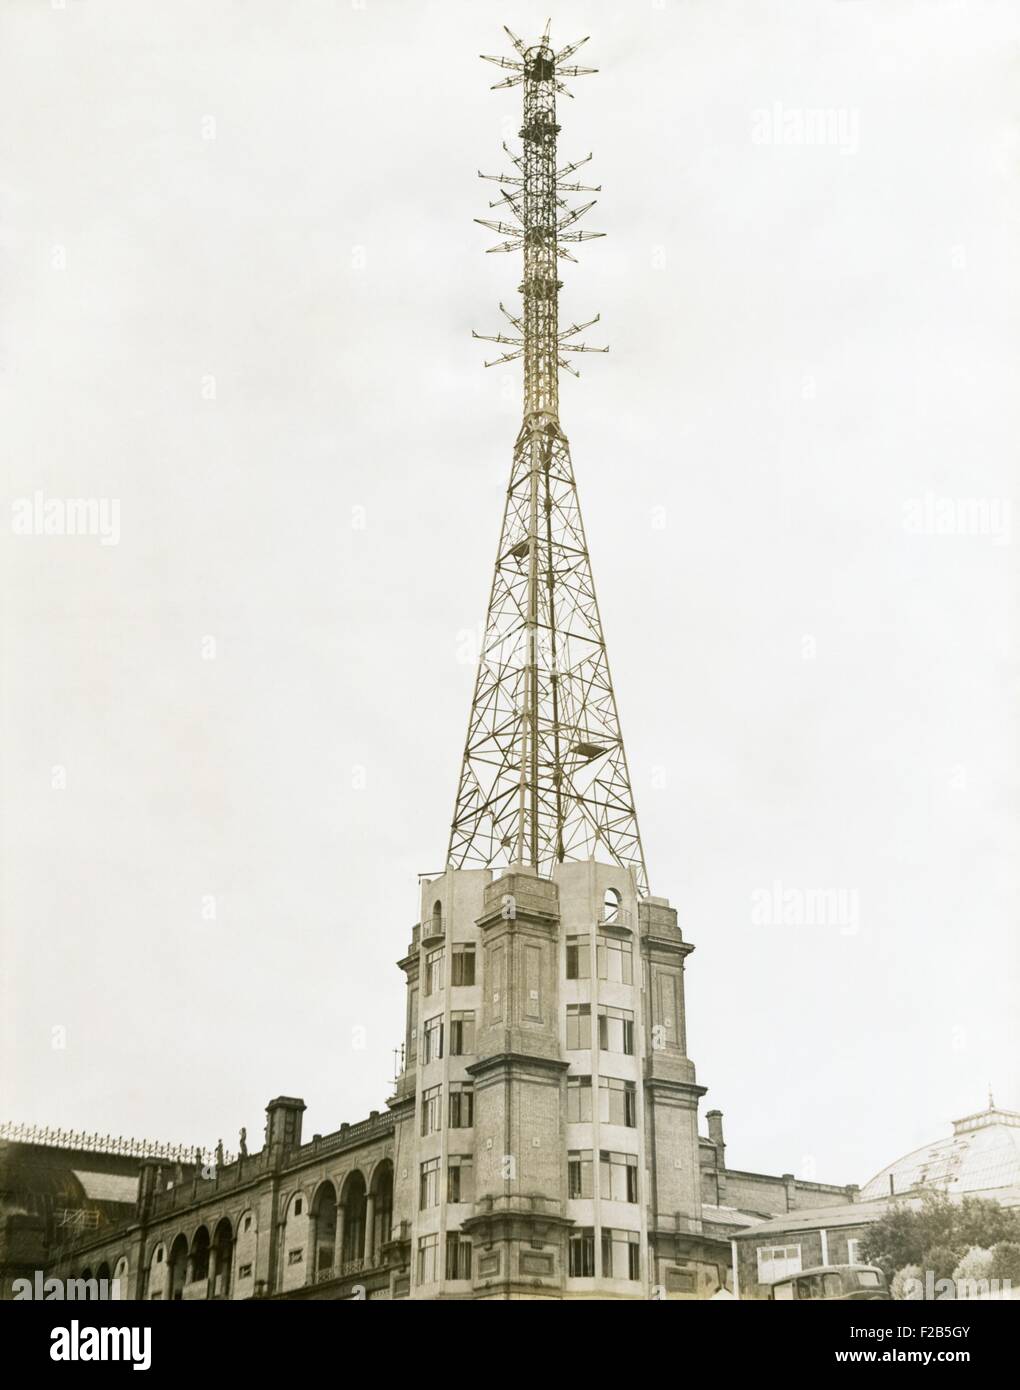 La torre della televisione a Alexandra luogo a Londra, agosto 17, 1936. La British Broadcasting Corporation (BBC) ha uffici di televisione, studios e trasmettitori per sviluppare e testare la televisione. Esse sono state progettando per un nov. 1936 Apertura della BBC Broadcasting. - (BSLOC 2014 17 132) Foto Stock